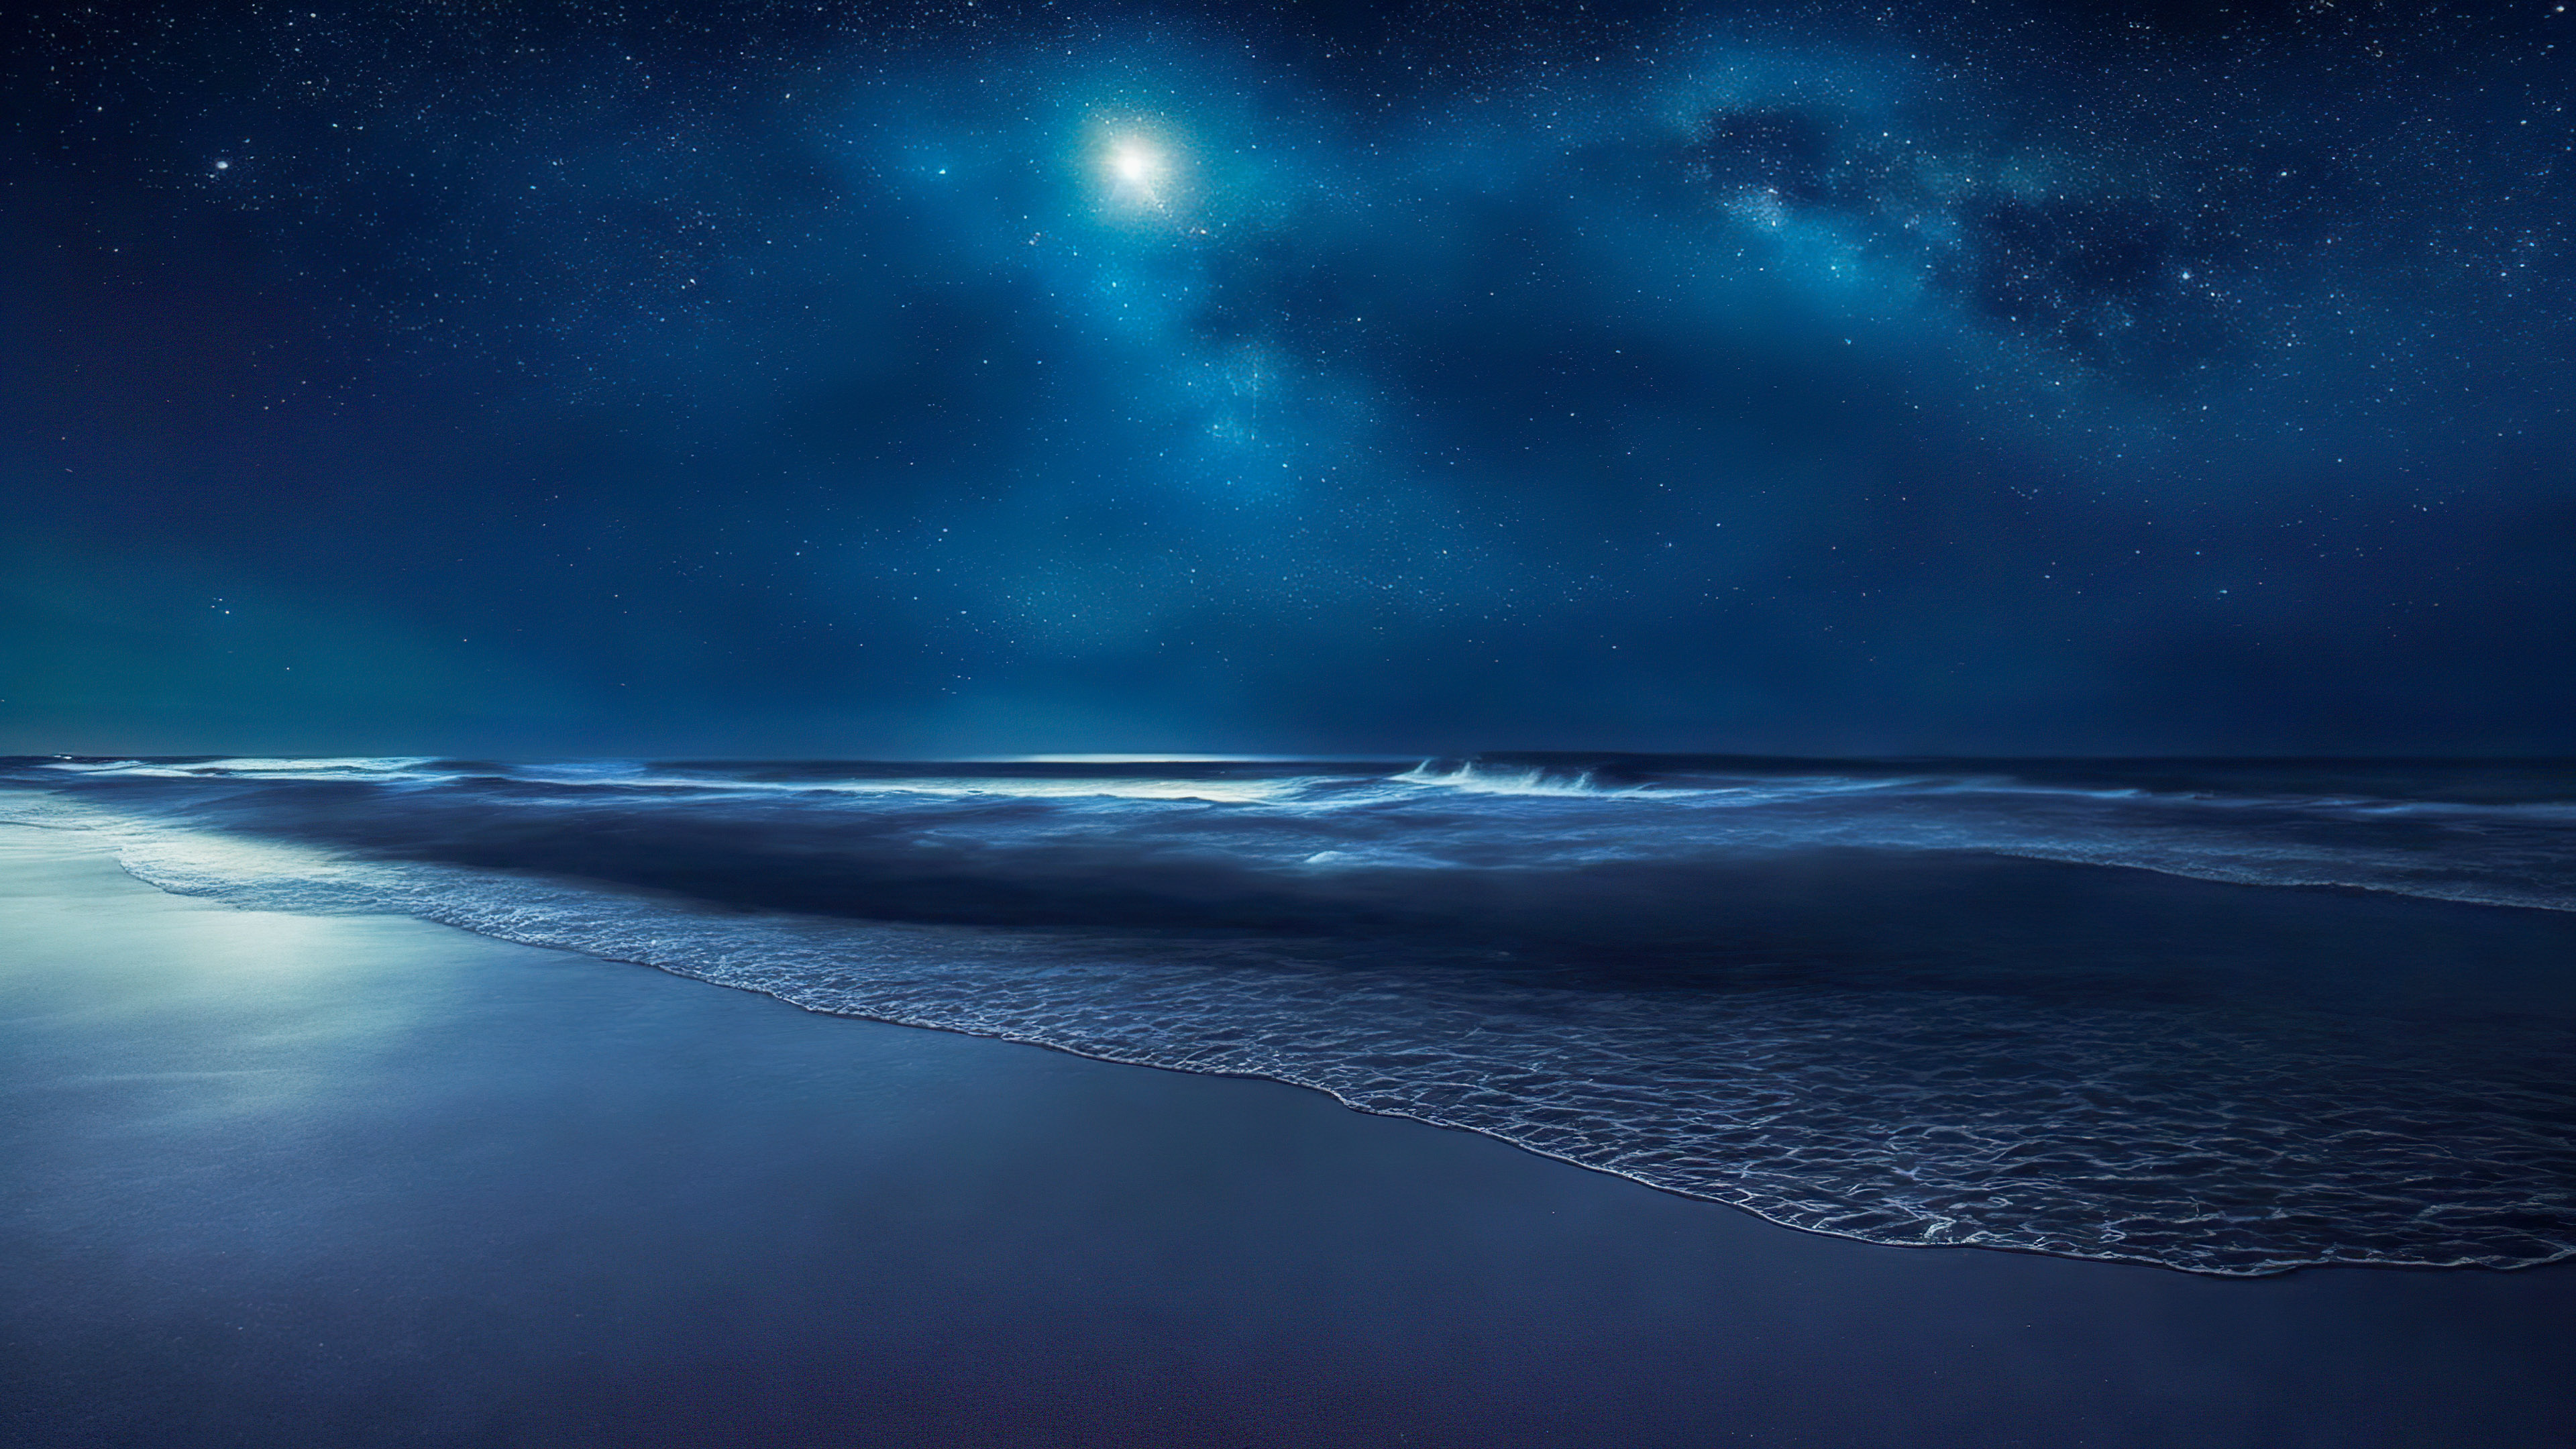 Transformez l'ambiance de votre appareil avec notre fond d'écran de ciel bleu foncé, capturant une plage éloignée la nuit, où les vagues rencontrent le rivage sous une toile d'étoiles scintillantes, et laissez la sérénité vous envahir.